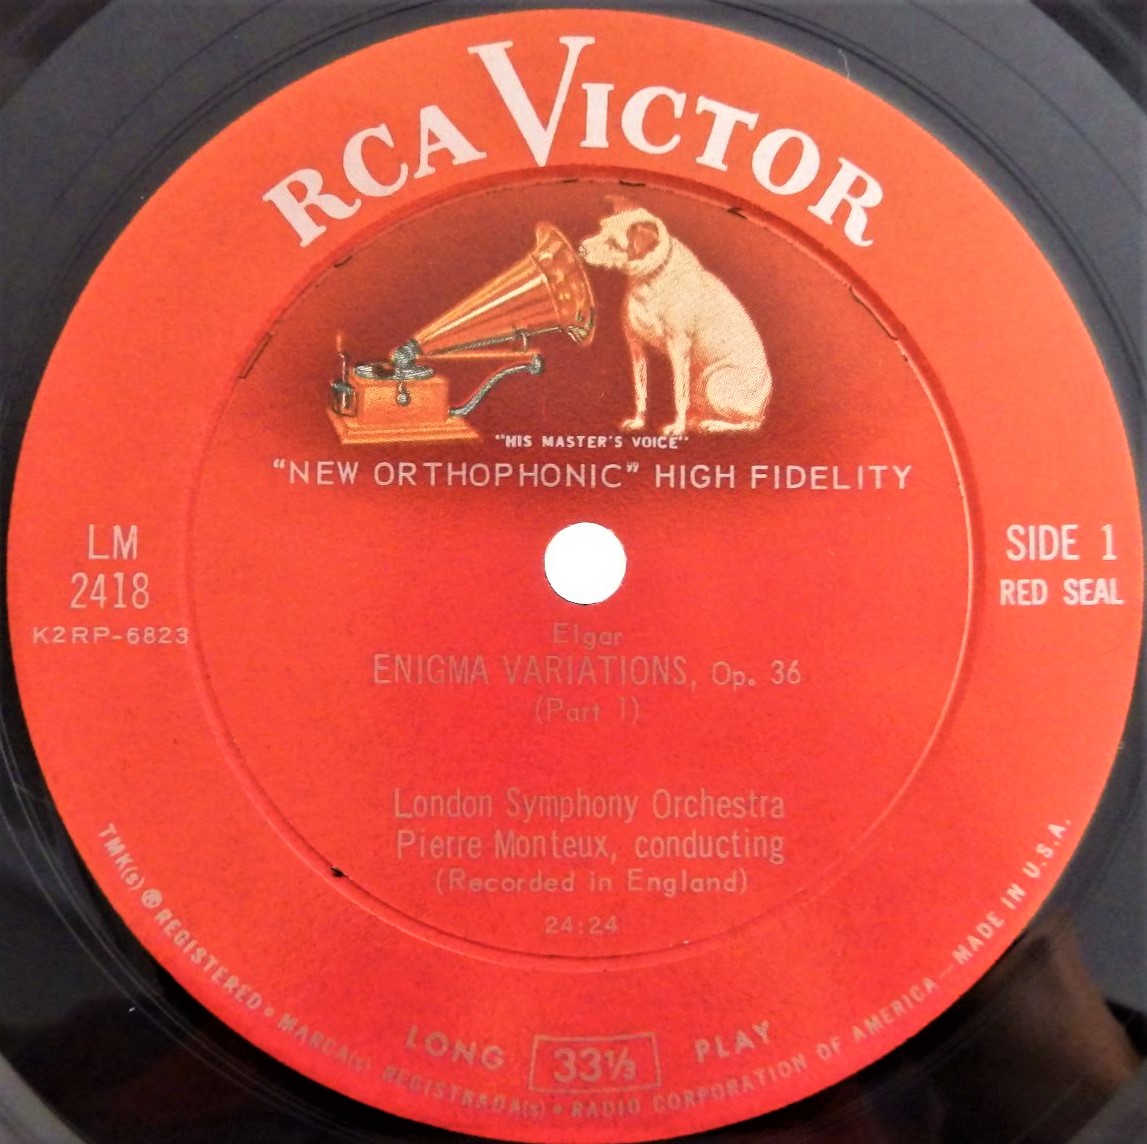 クラシックLPのラベル変遷 – 米RCA VICTOR篇 | レコード買取【総合No.1